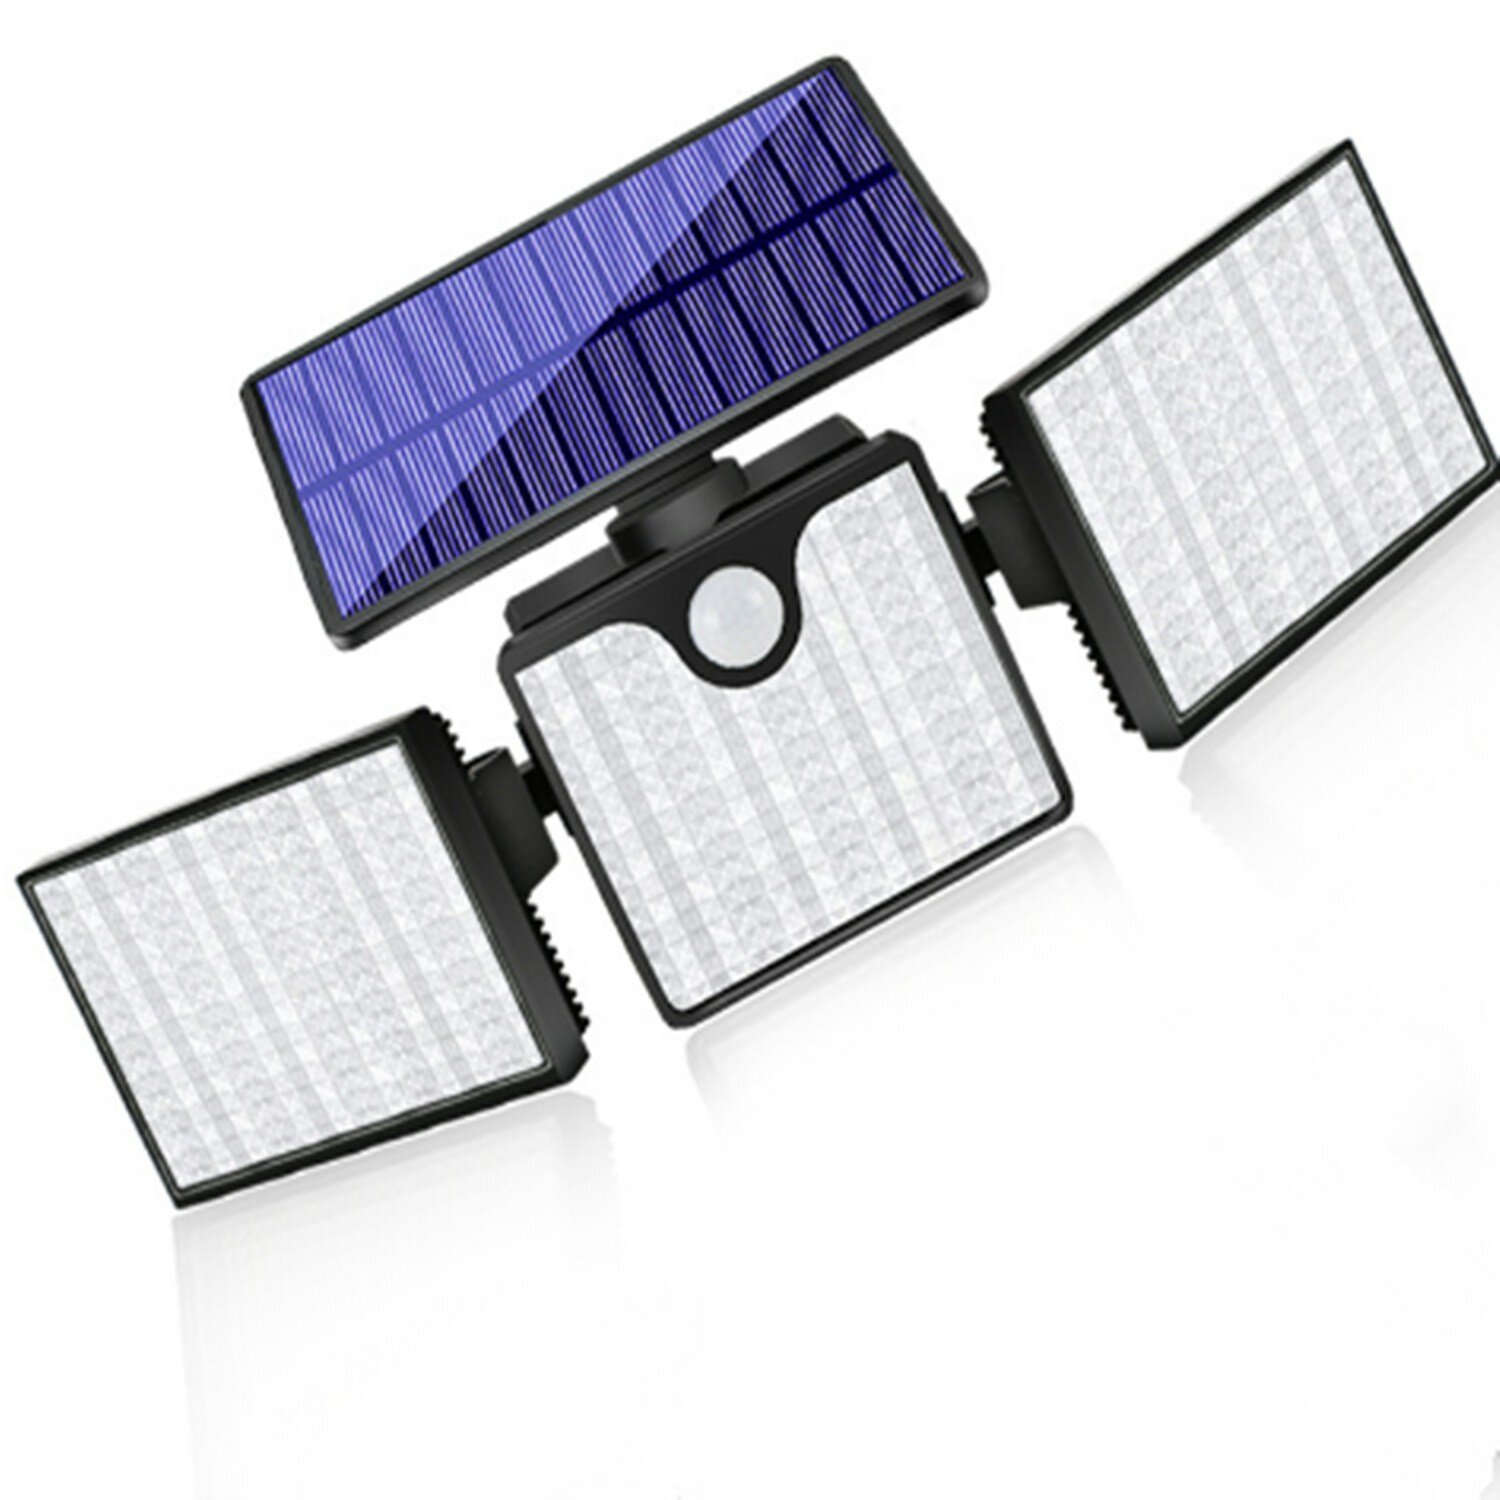 モーションセンサーソーラースリーヘッドウォールライトアウトドア180 LED洪水ライト調整可能なヘッド270°広角ソーラー照明